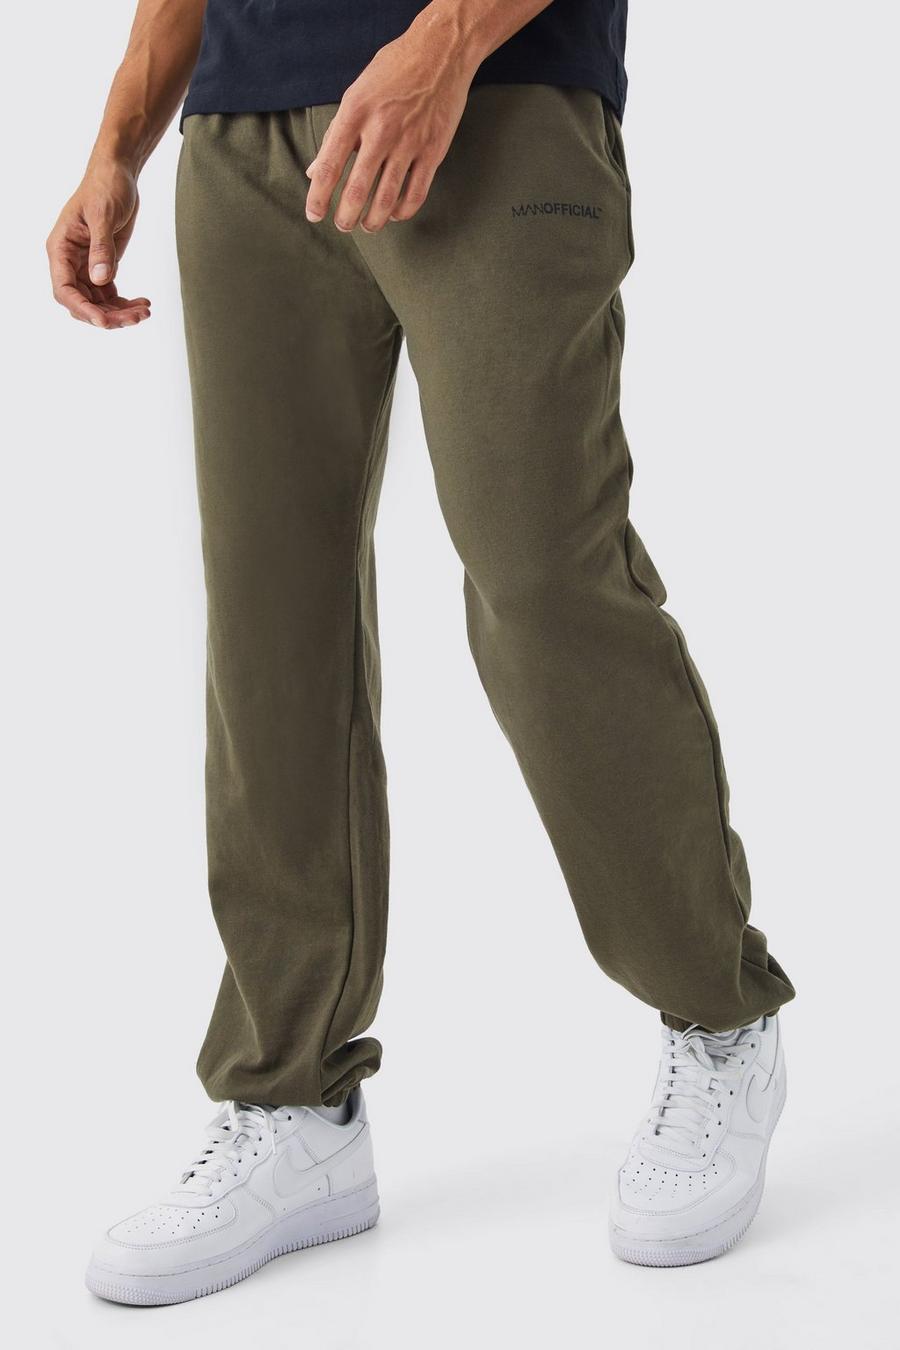 Pantaloni tuta oversize Man Official, Khaki